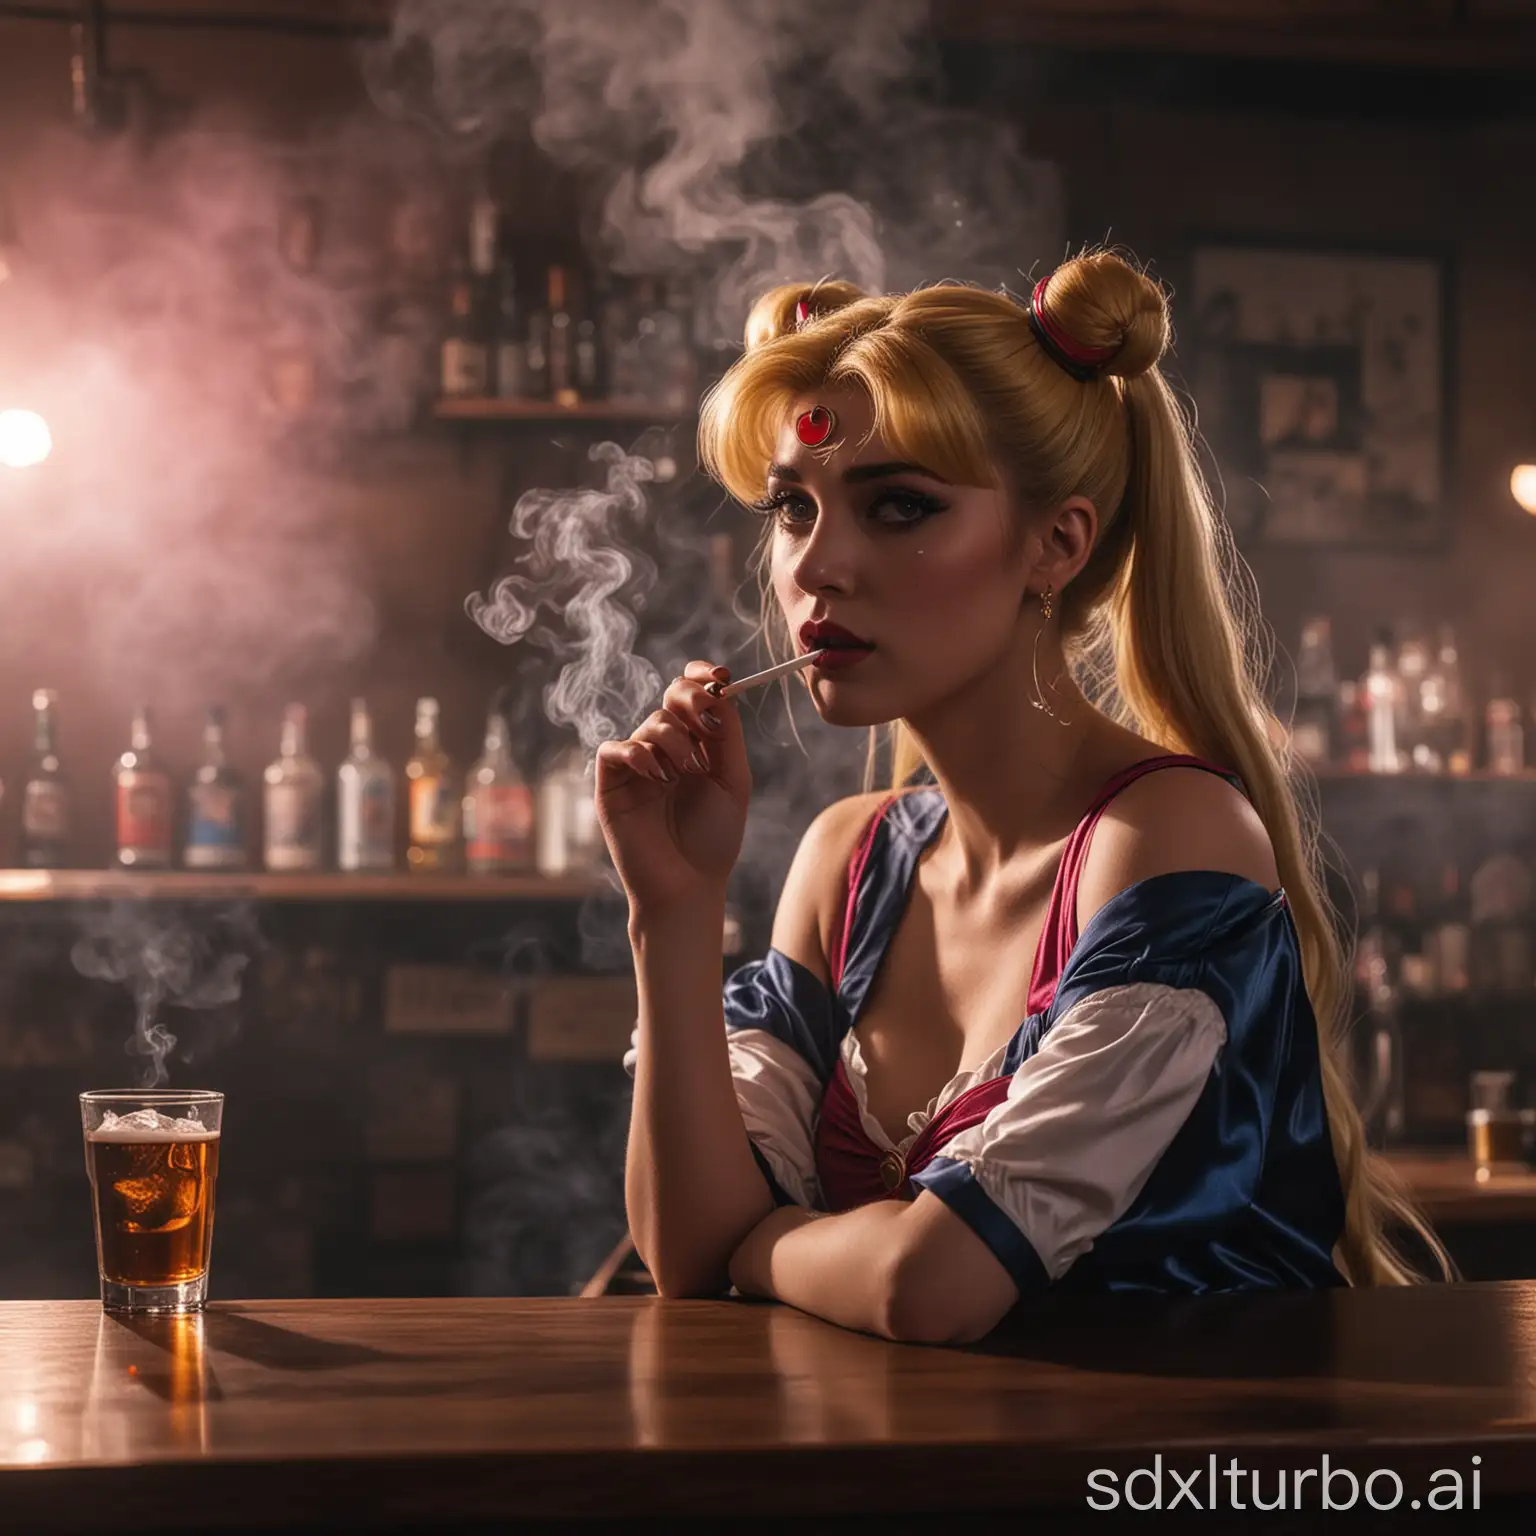 Sad-Sailor-Moon-Smoking-at-Dark-Bar-Counter-with-Heavy-Smoke-and-Lasers